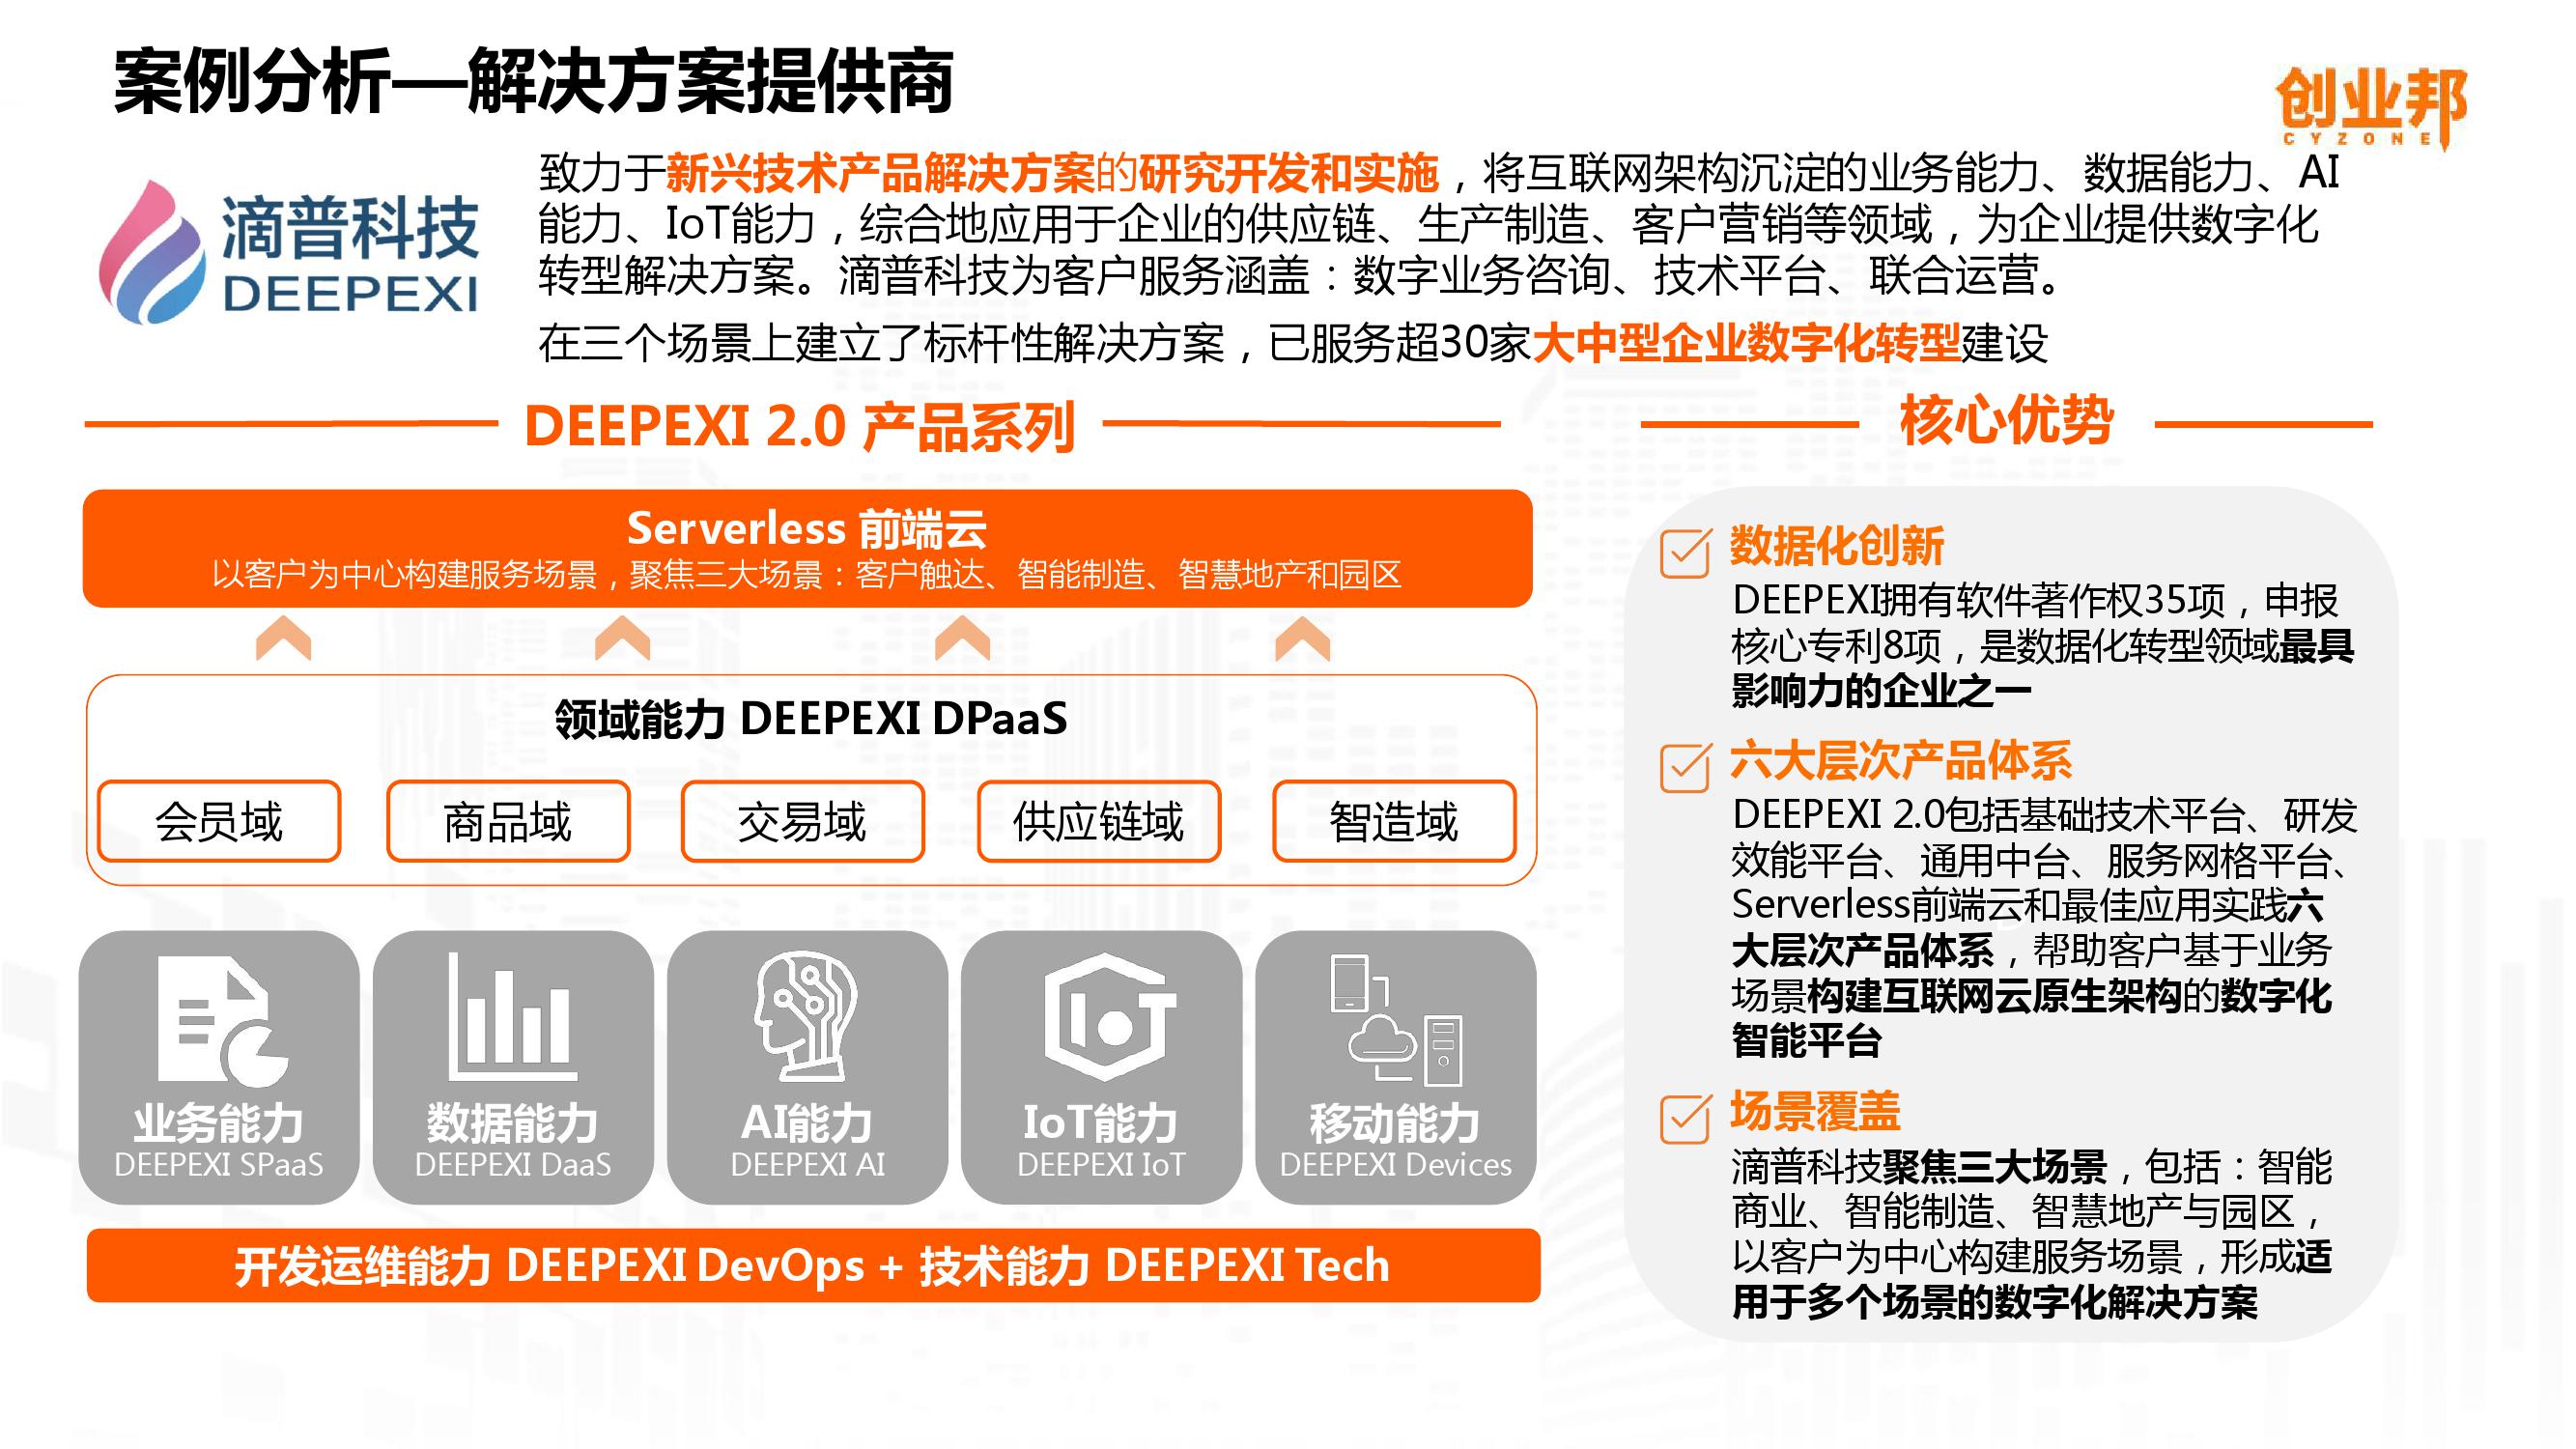 2019中国企业数字化智能化研究报告_000038-3